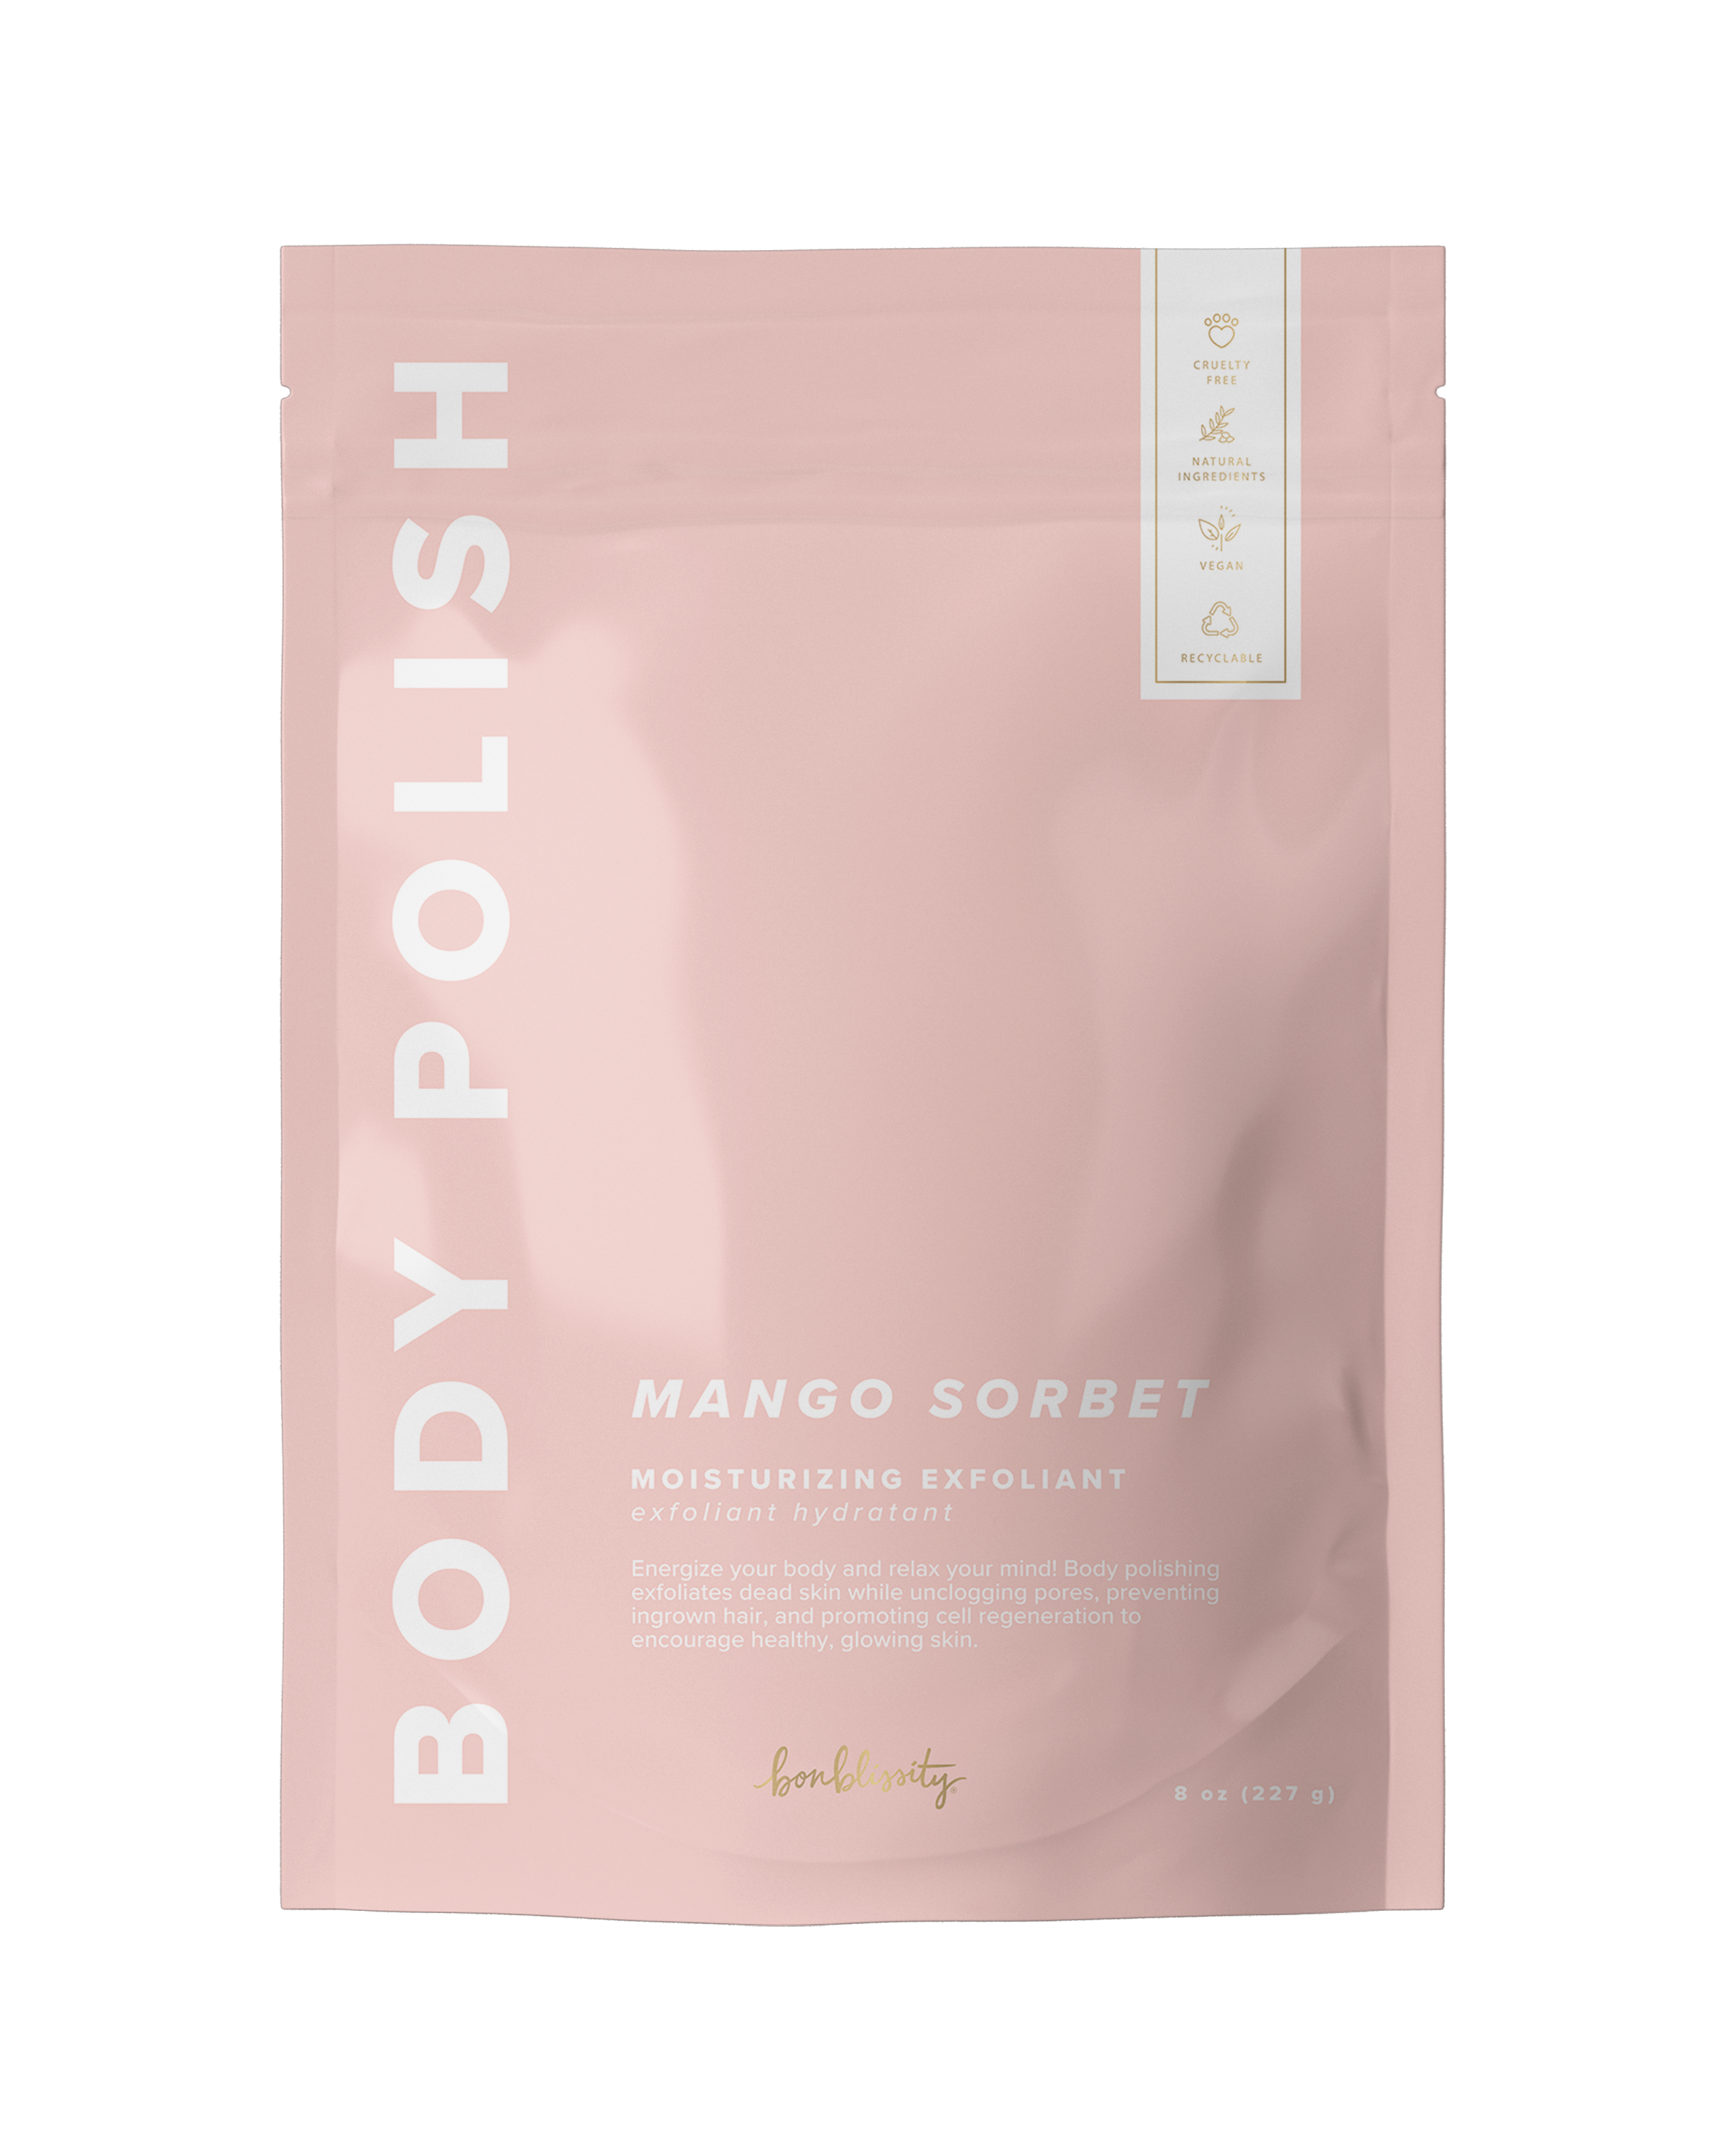 Body Polish Body Scrub - Mango Sorbet (MSRP $24)